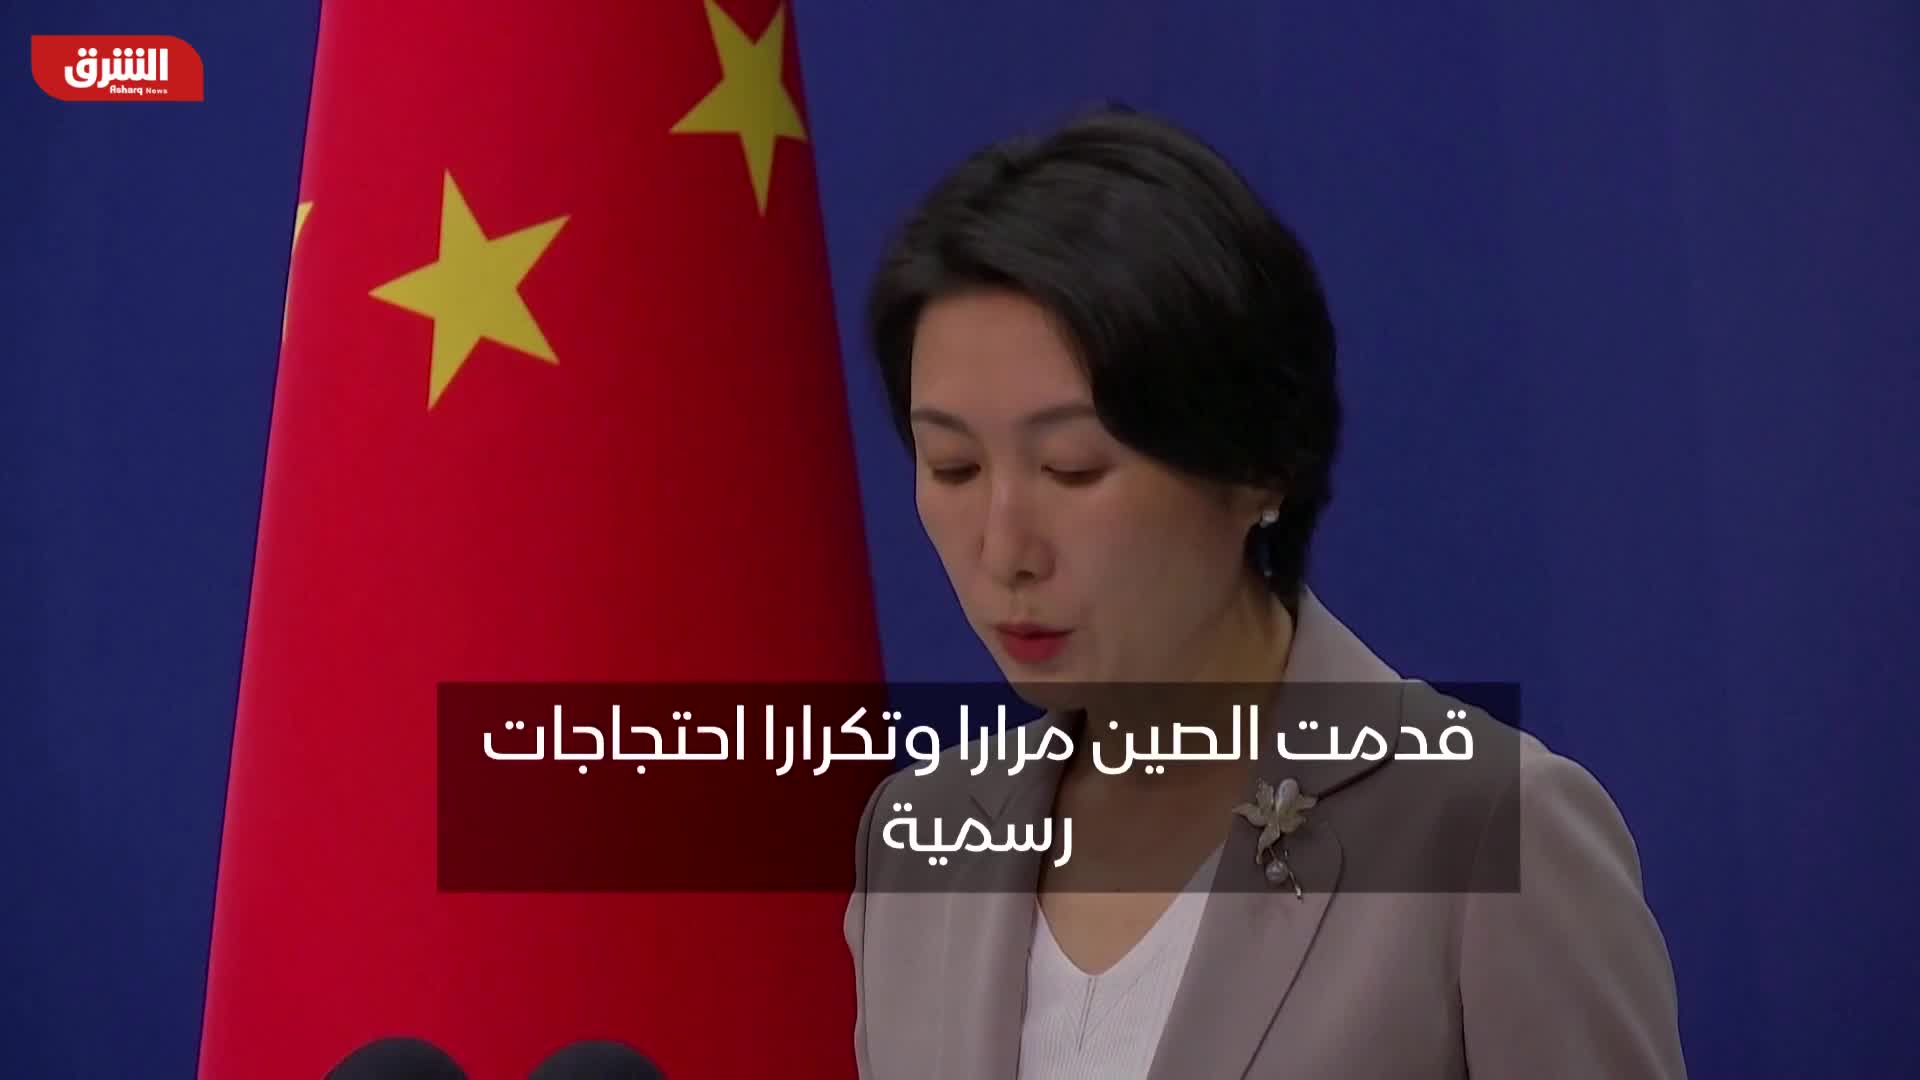 ماو نينج: الصين قدمت عدة احتجاجات لواشنطن بشأن العلاقة مع تايوان